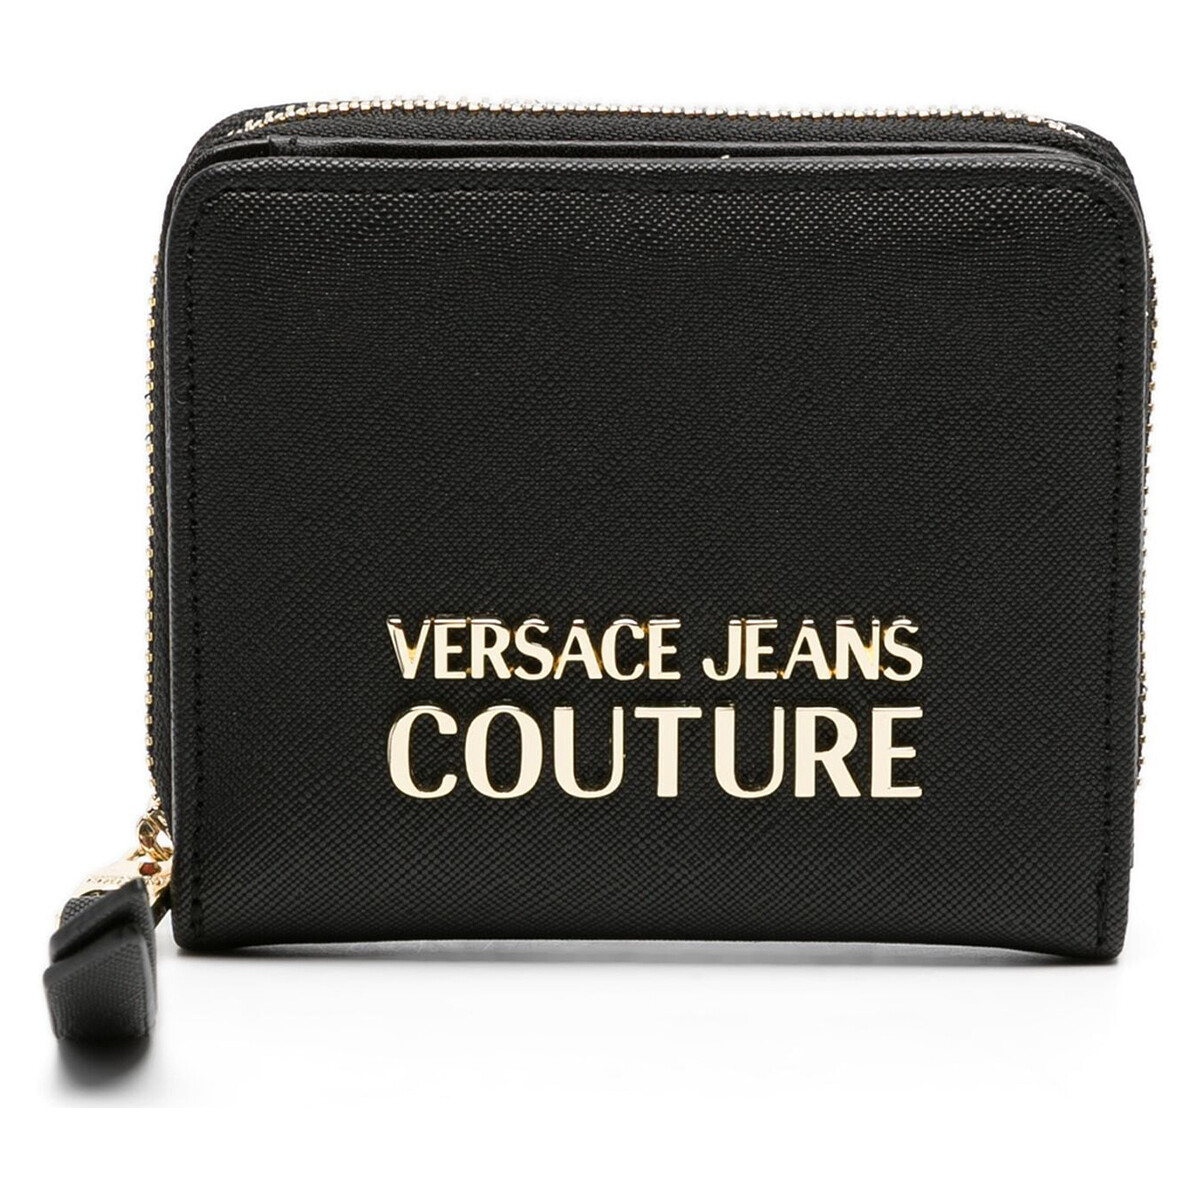 Borse Donna Portafogli Versace Jeans Couture 75va5pa2zs467-899 Nero